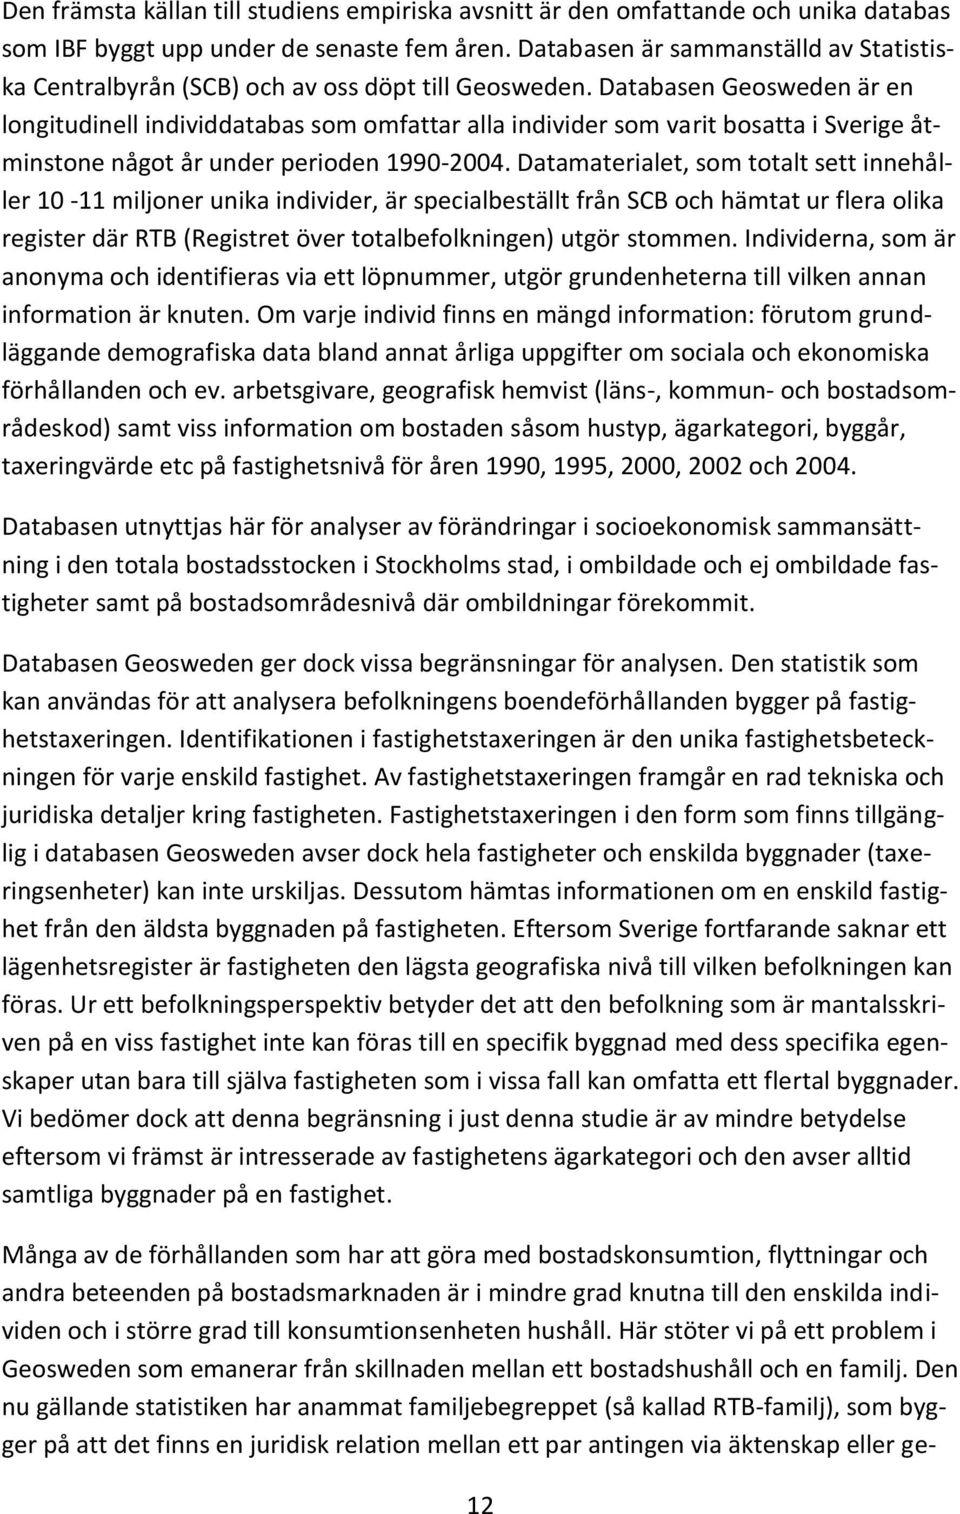 Databasen Geosweden är en longitudinell individdatabas som omfattar alla individer som varit bosatta i Sverige åtminstone något år under perioden 1990-2004.